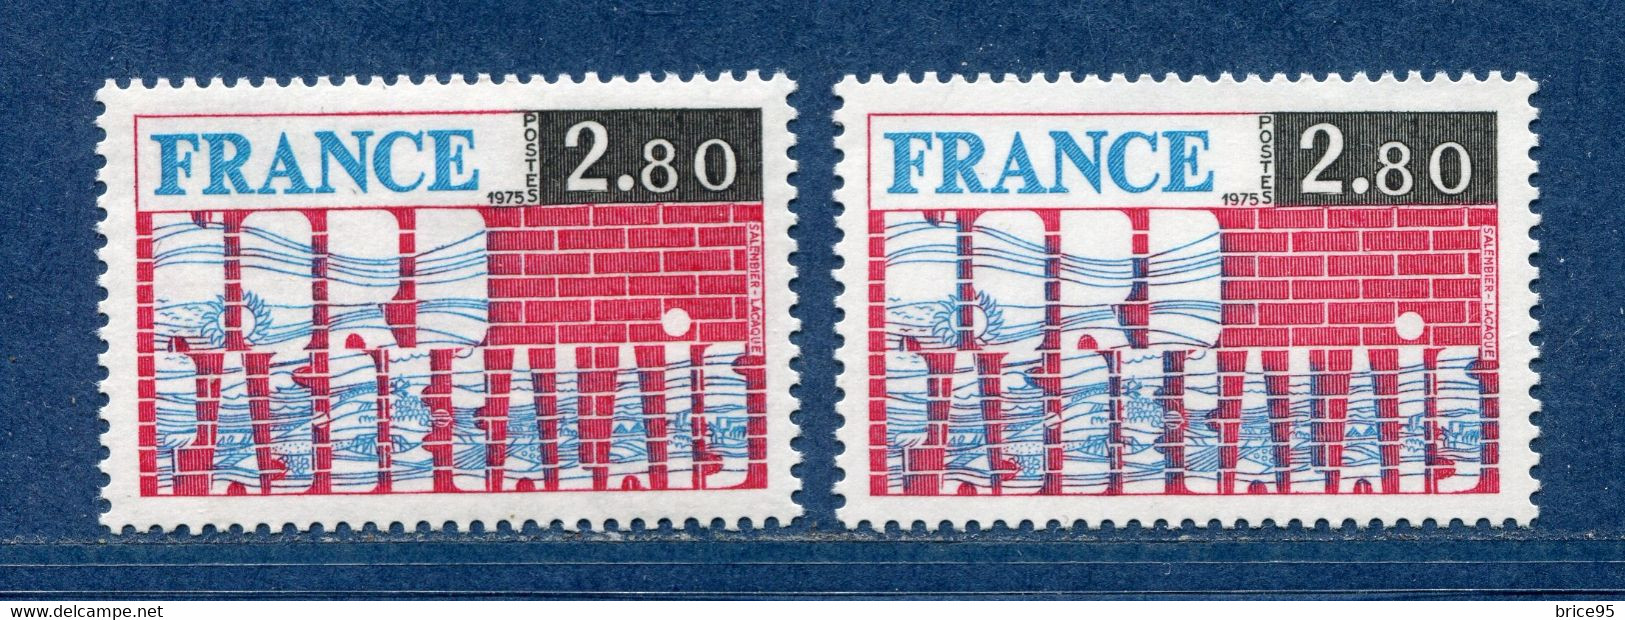 ⭐ France - Variété - YT N° 1852 - Couleurs - Pétouille - Neuf Sans Charnière - 1975 ⭐ - Nuevos